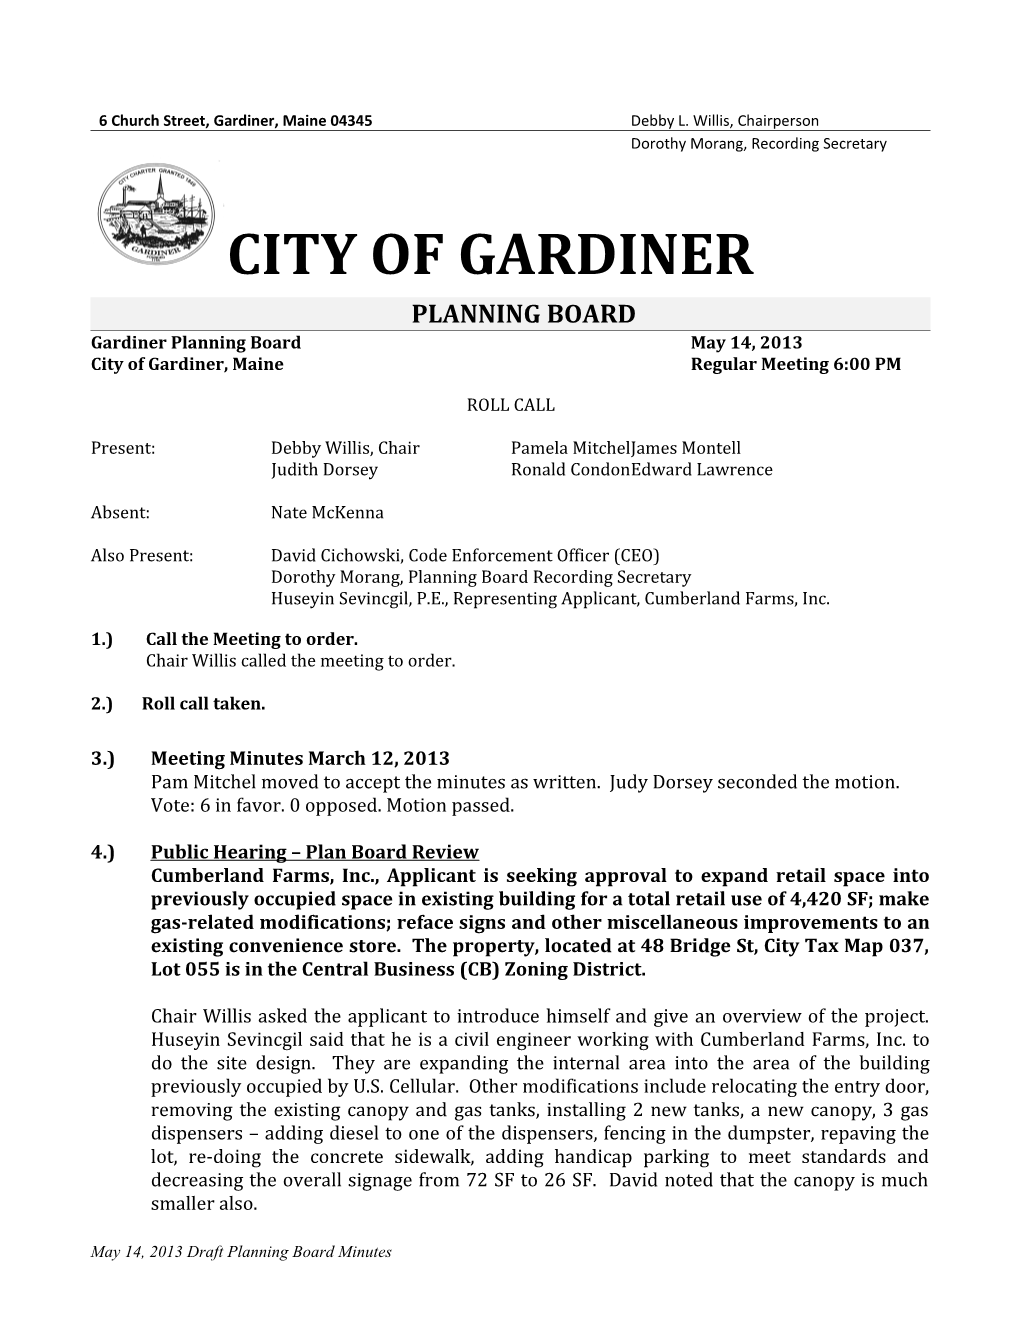 Gardiner Planning Board April 14, 1998